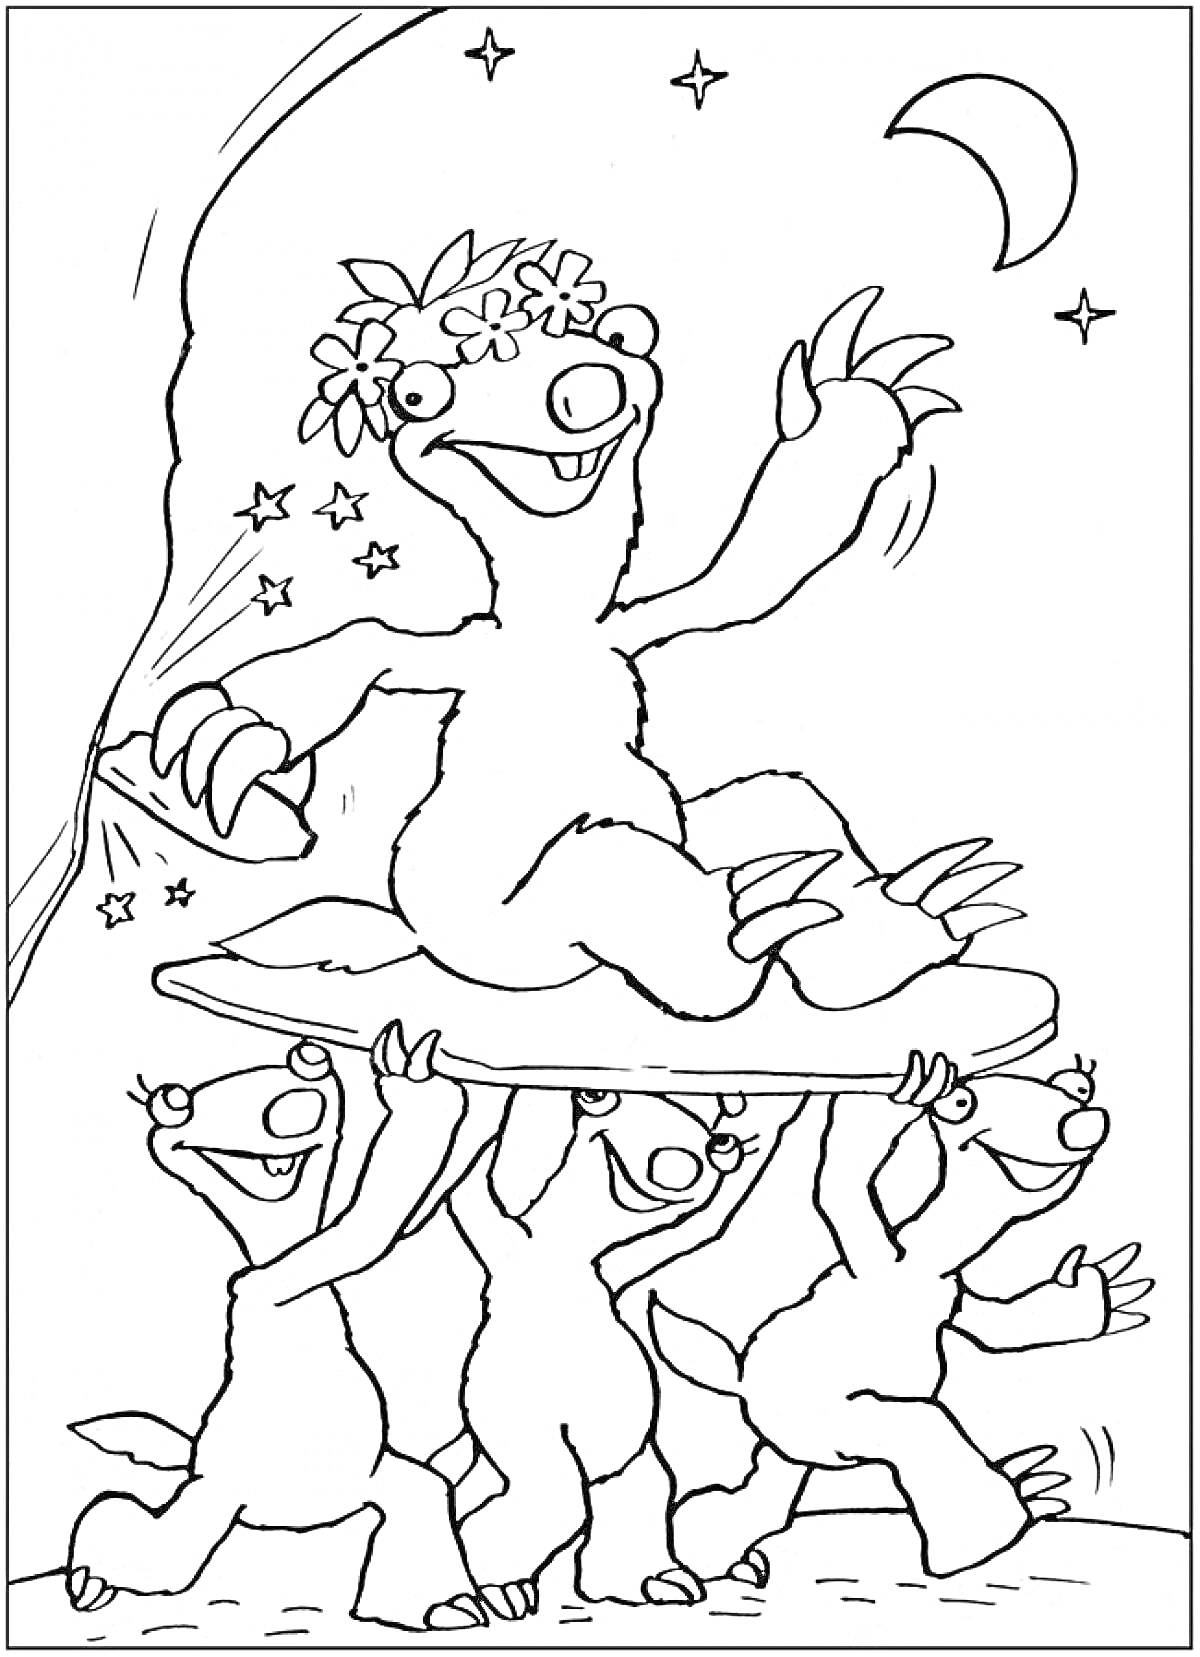 Радостный ленивец на доске, поднятой тремя другими ленивцами с луной и звездами на заднем плане